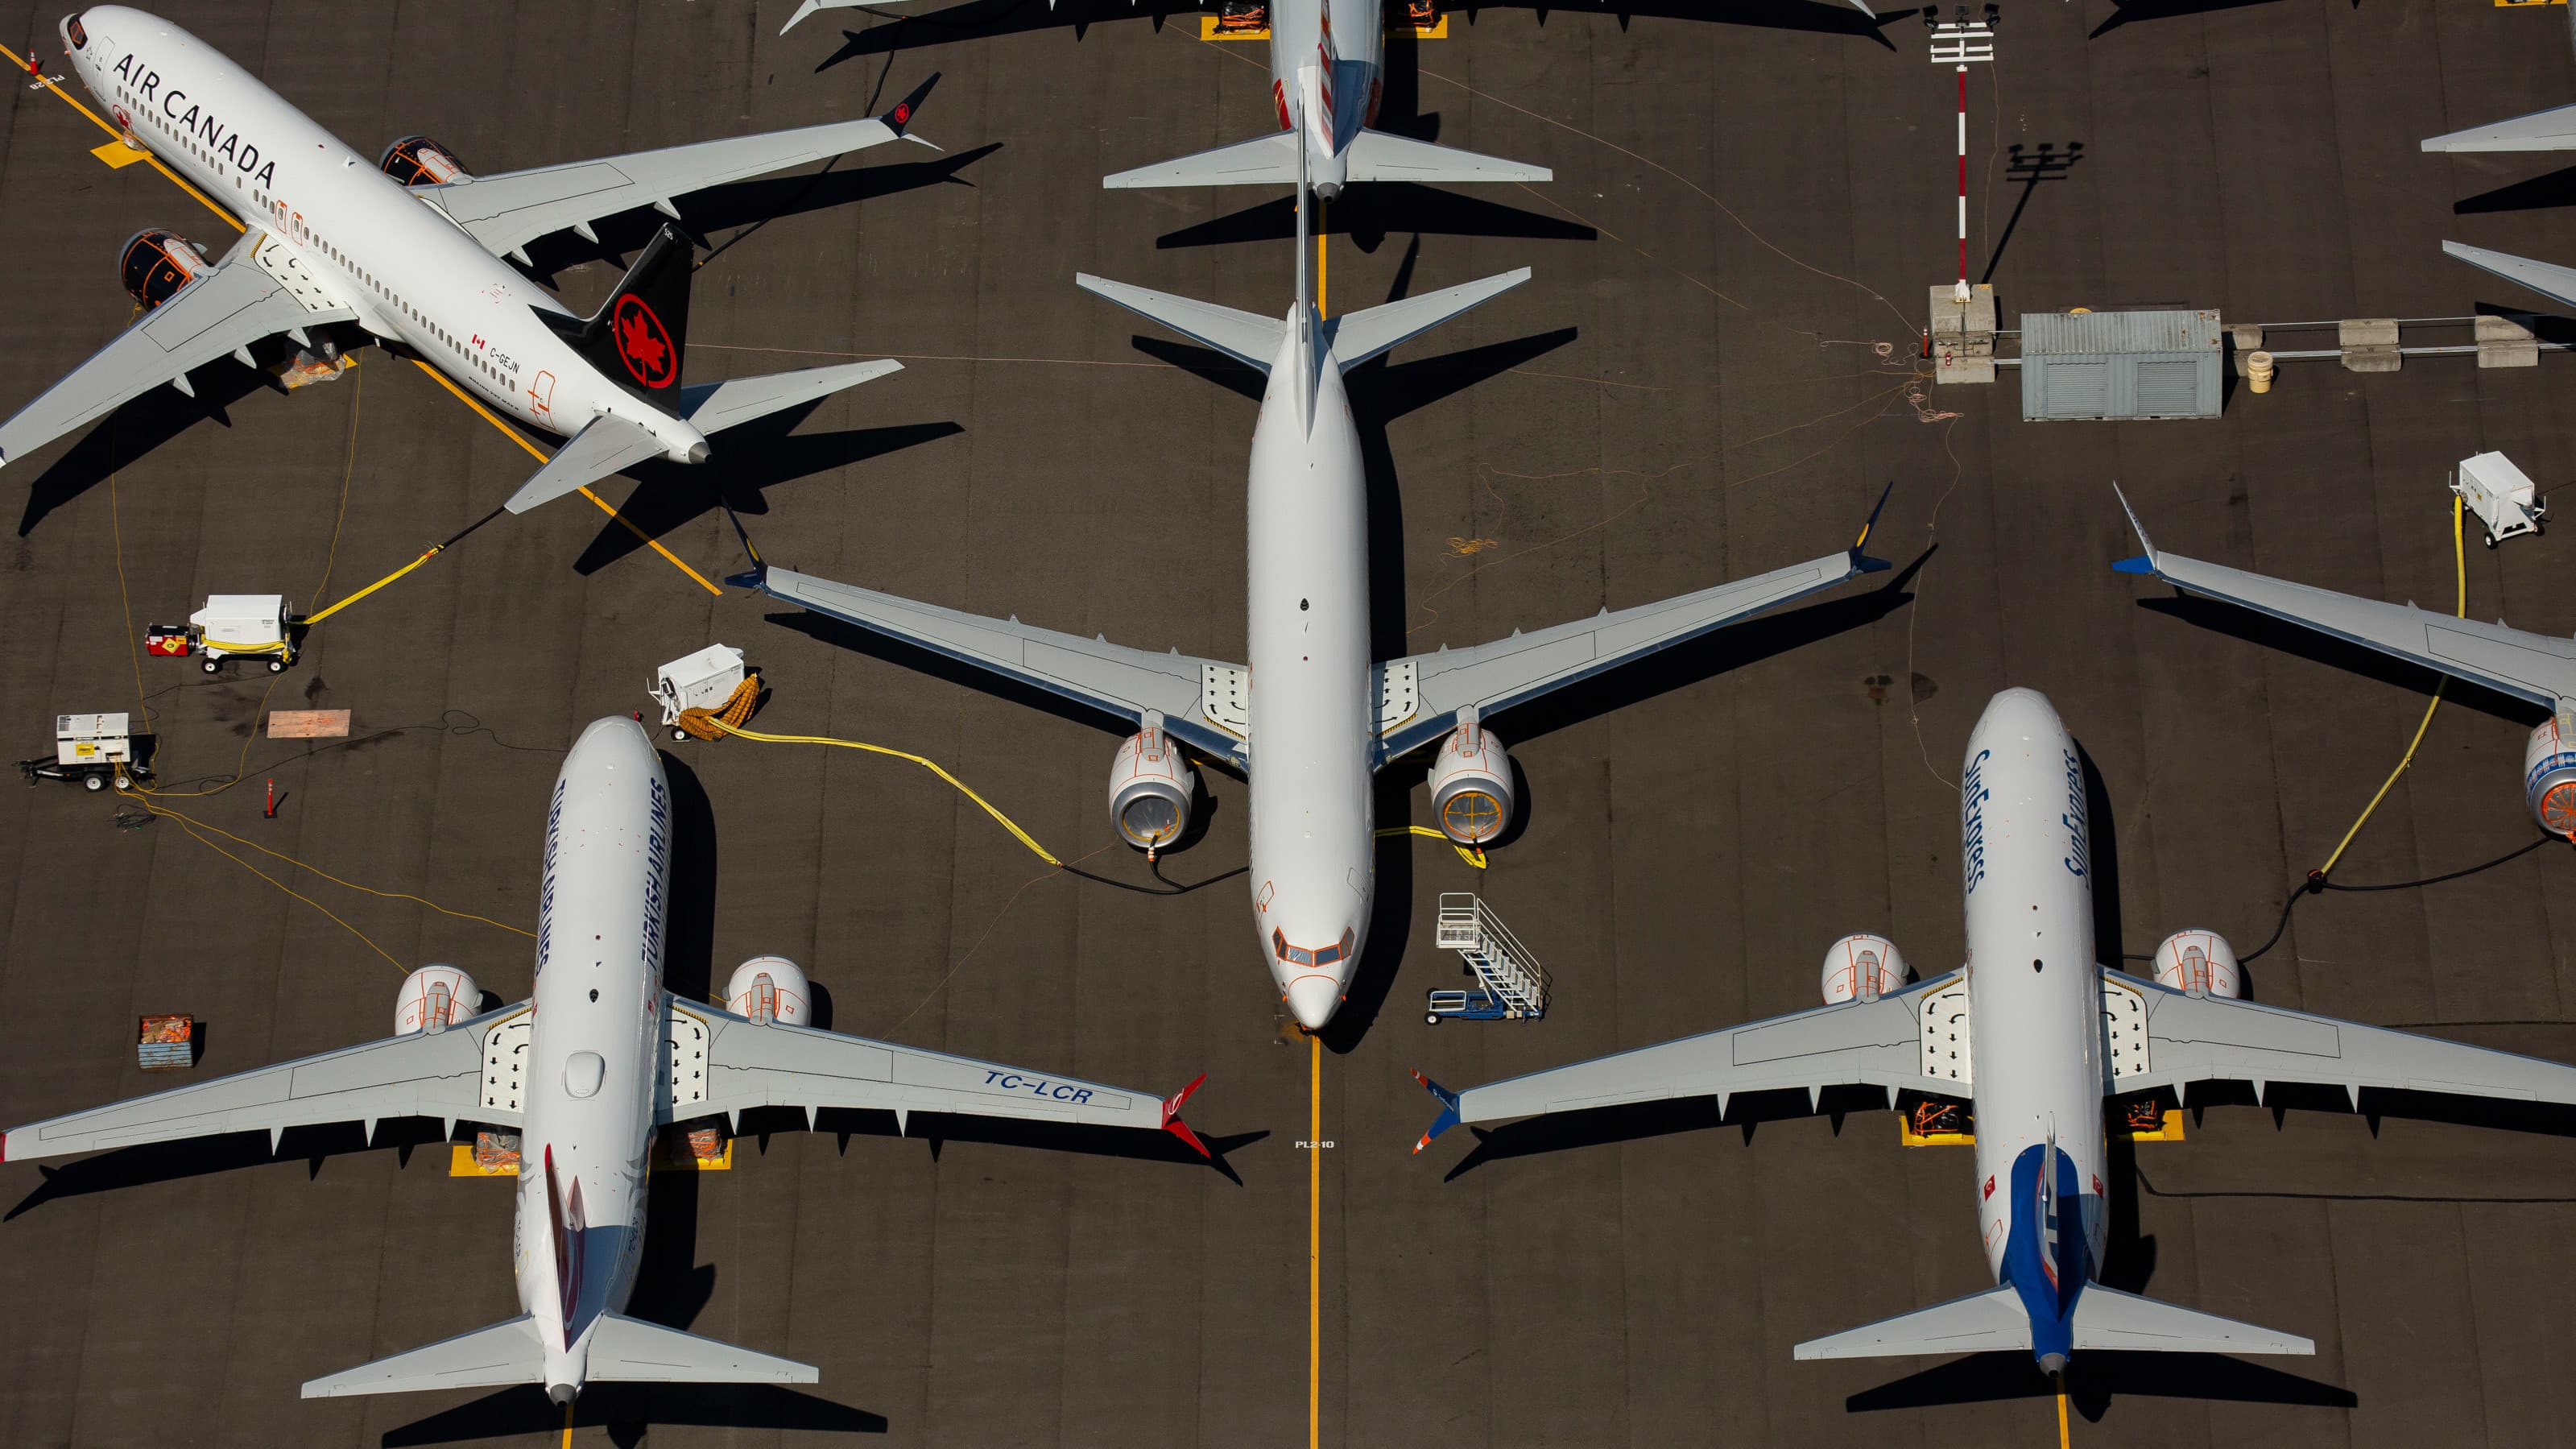 Uma série de aviões no chão vistos de um ponto de vista aéreo